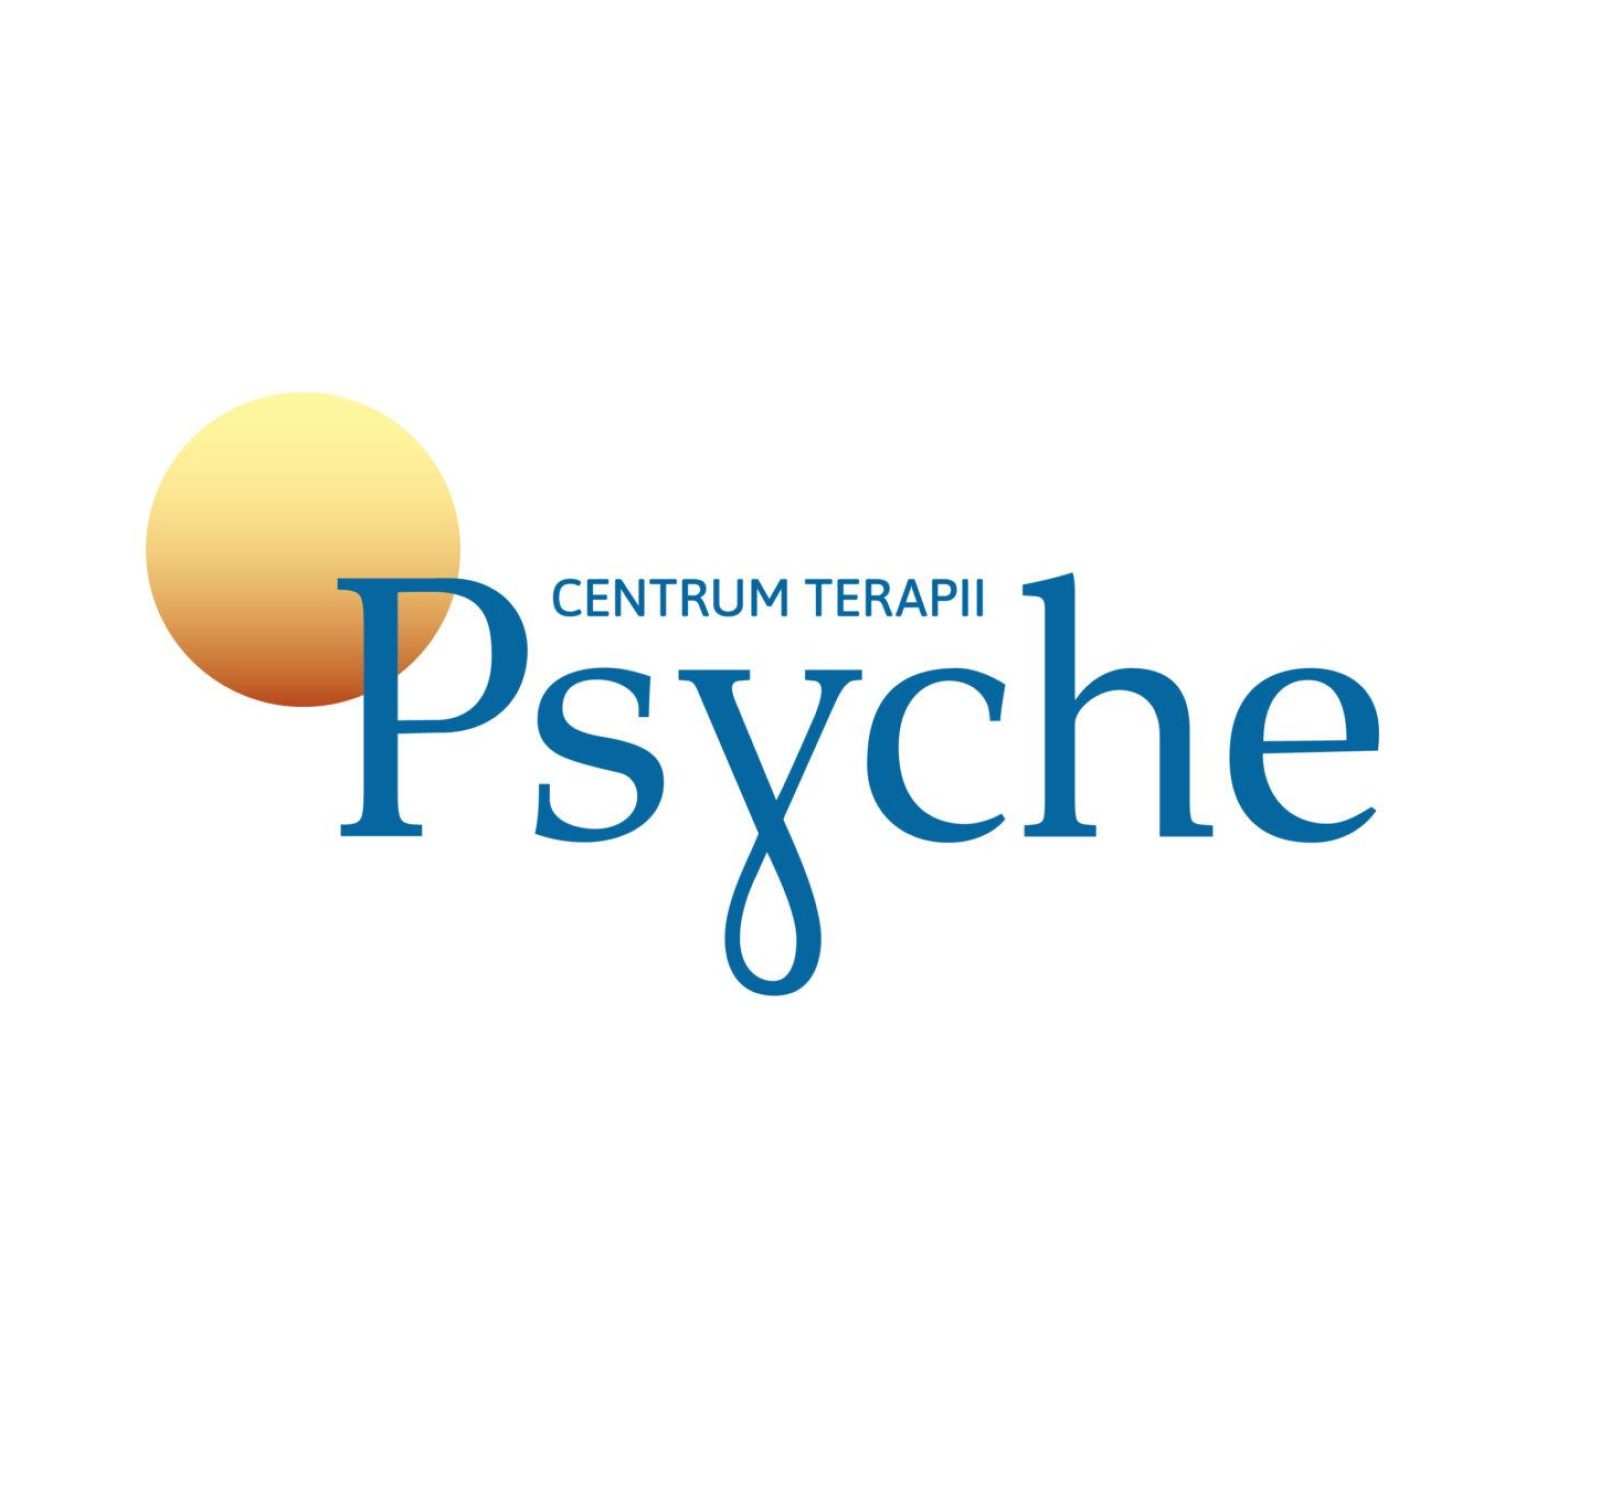 Psyche-Logotyp 2